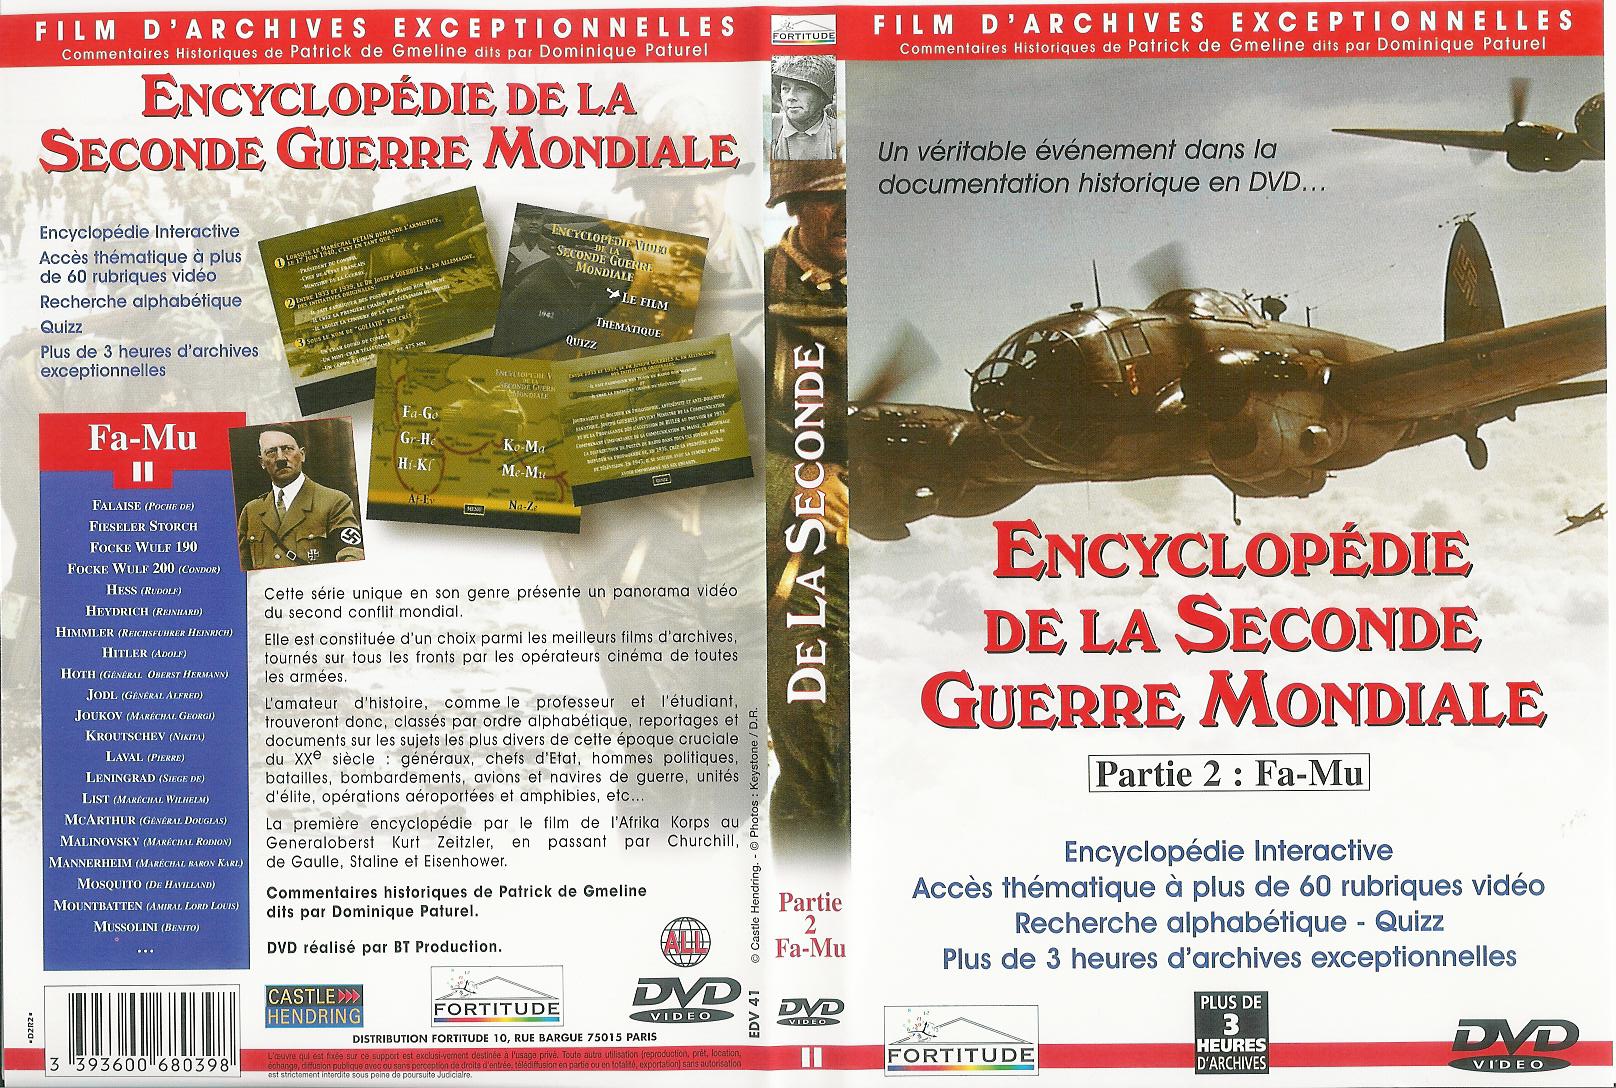 Jaquette DVD Encyclopedie de la seconde guerre mondiale dvd 2